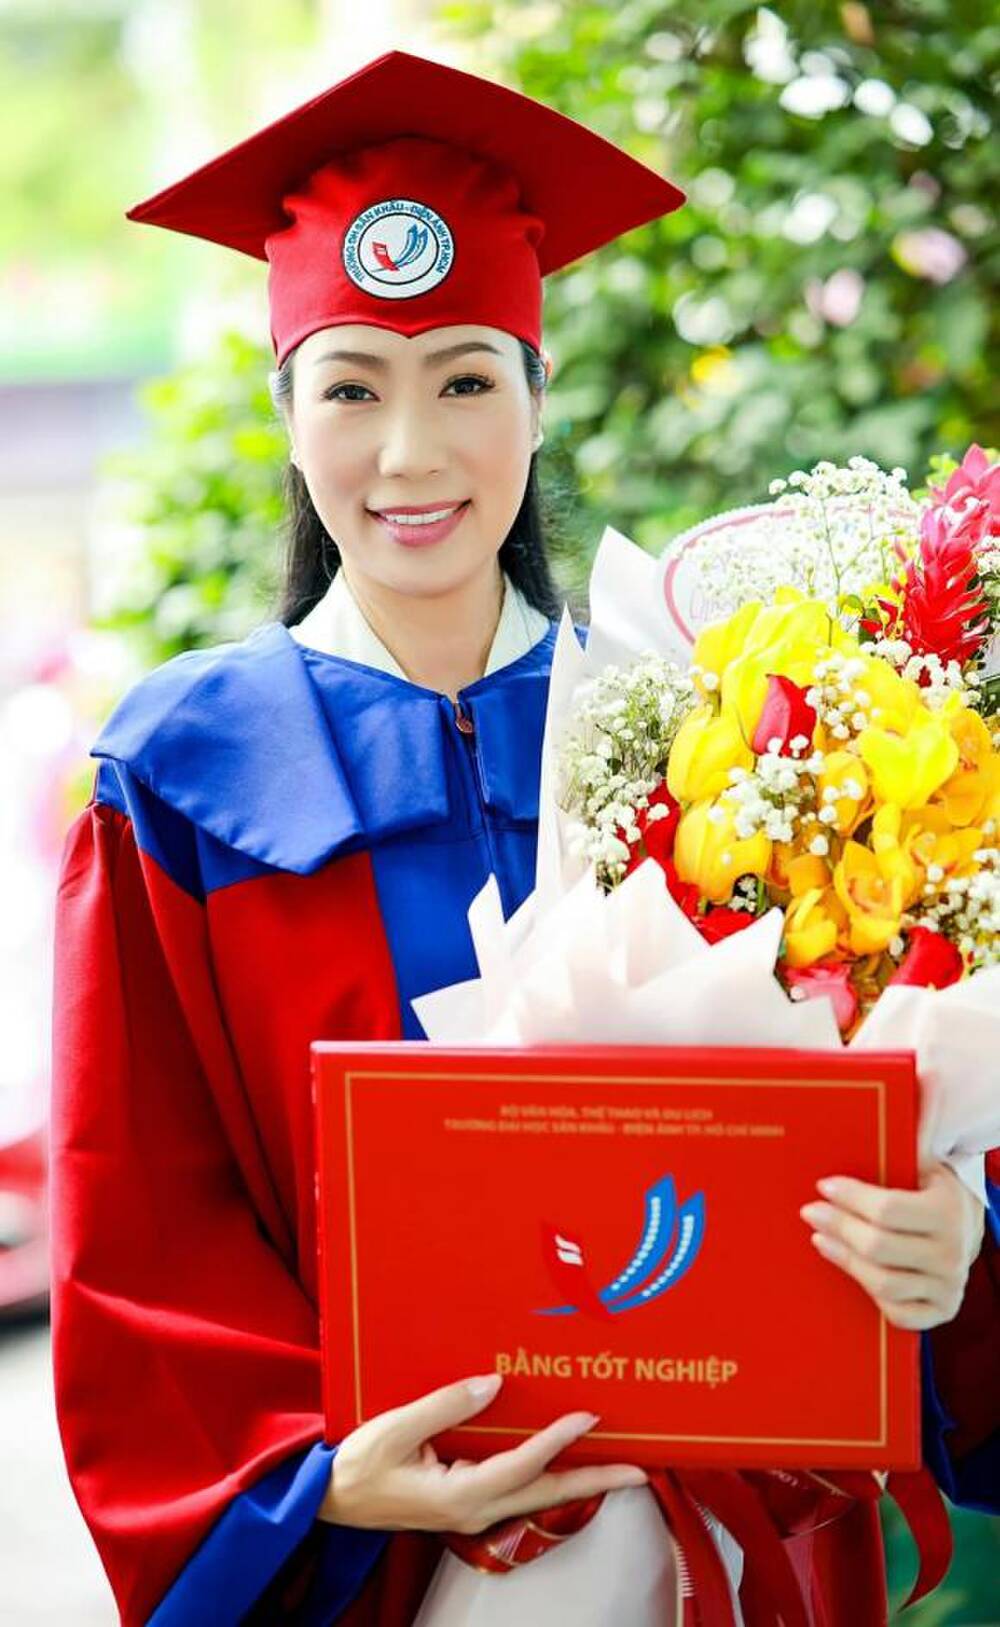  Á hậu Trịnh Kim Chi tốt nghiệp Cử nhân Trường đại học Sân khấu - Điện ảnh ở tuổi 49 - Ảnh 3